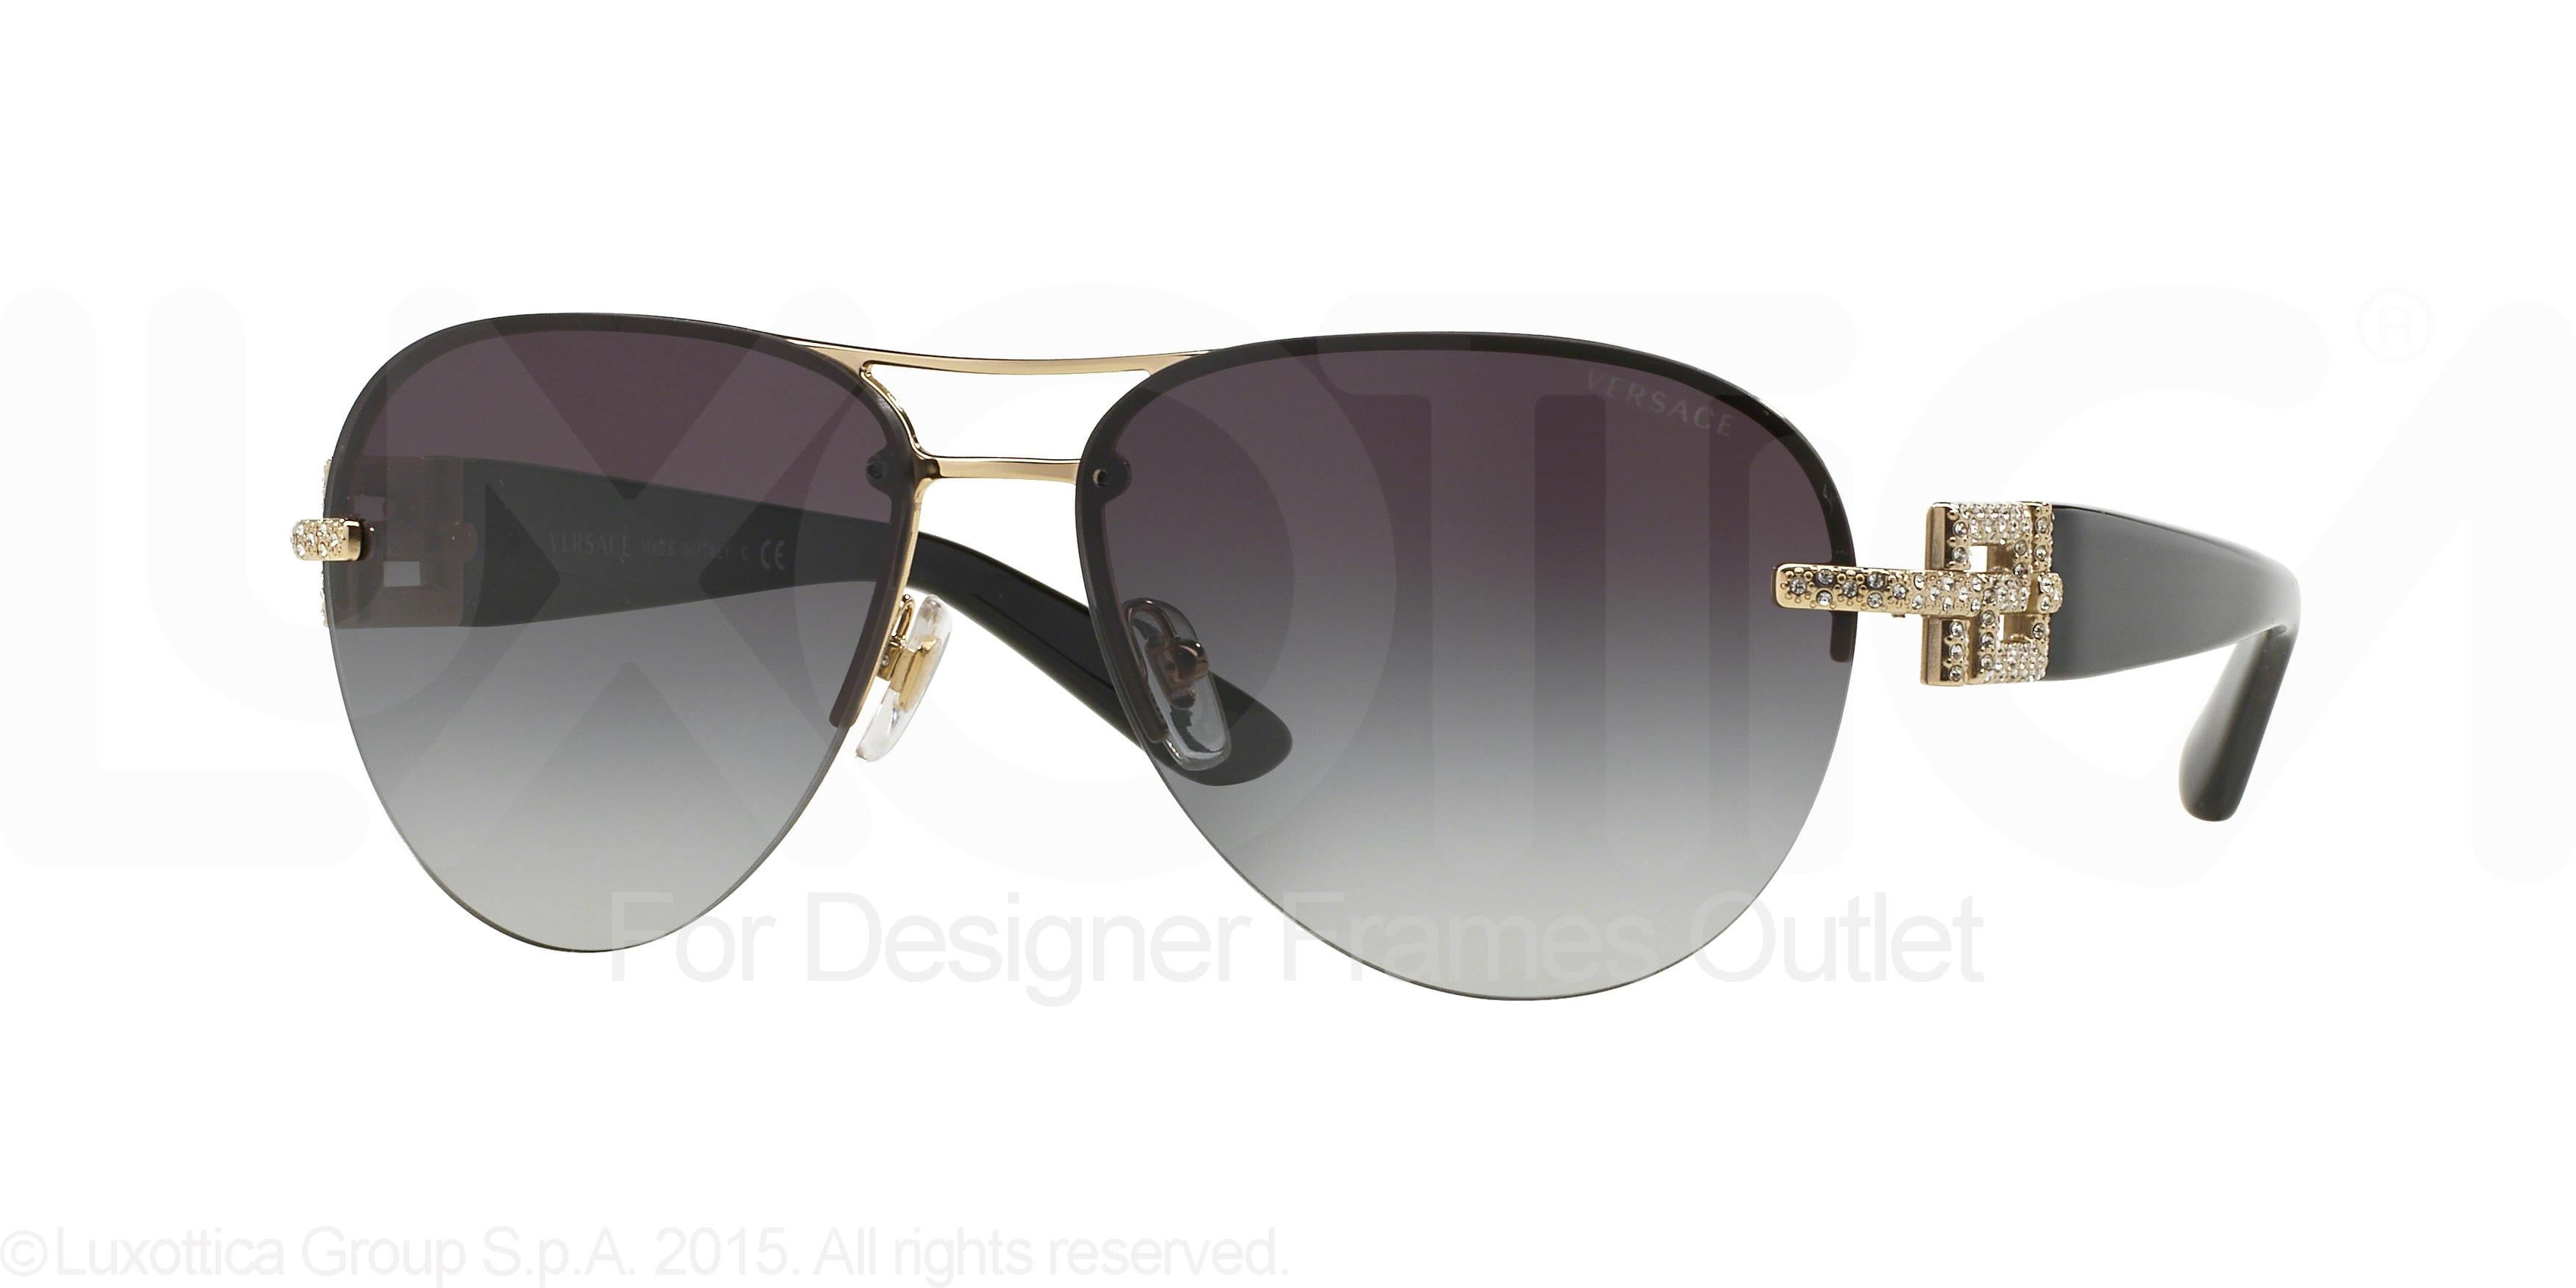 versace women's aviator sunglasses